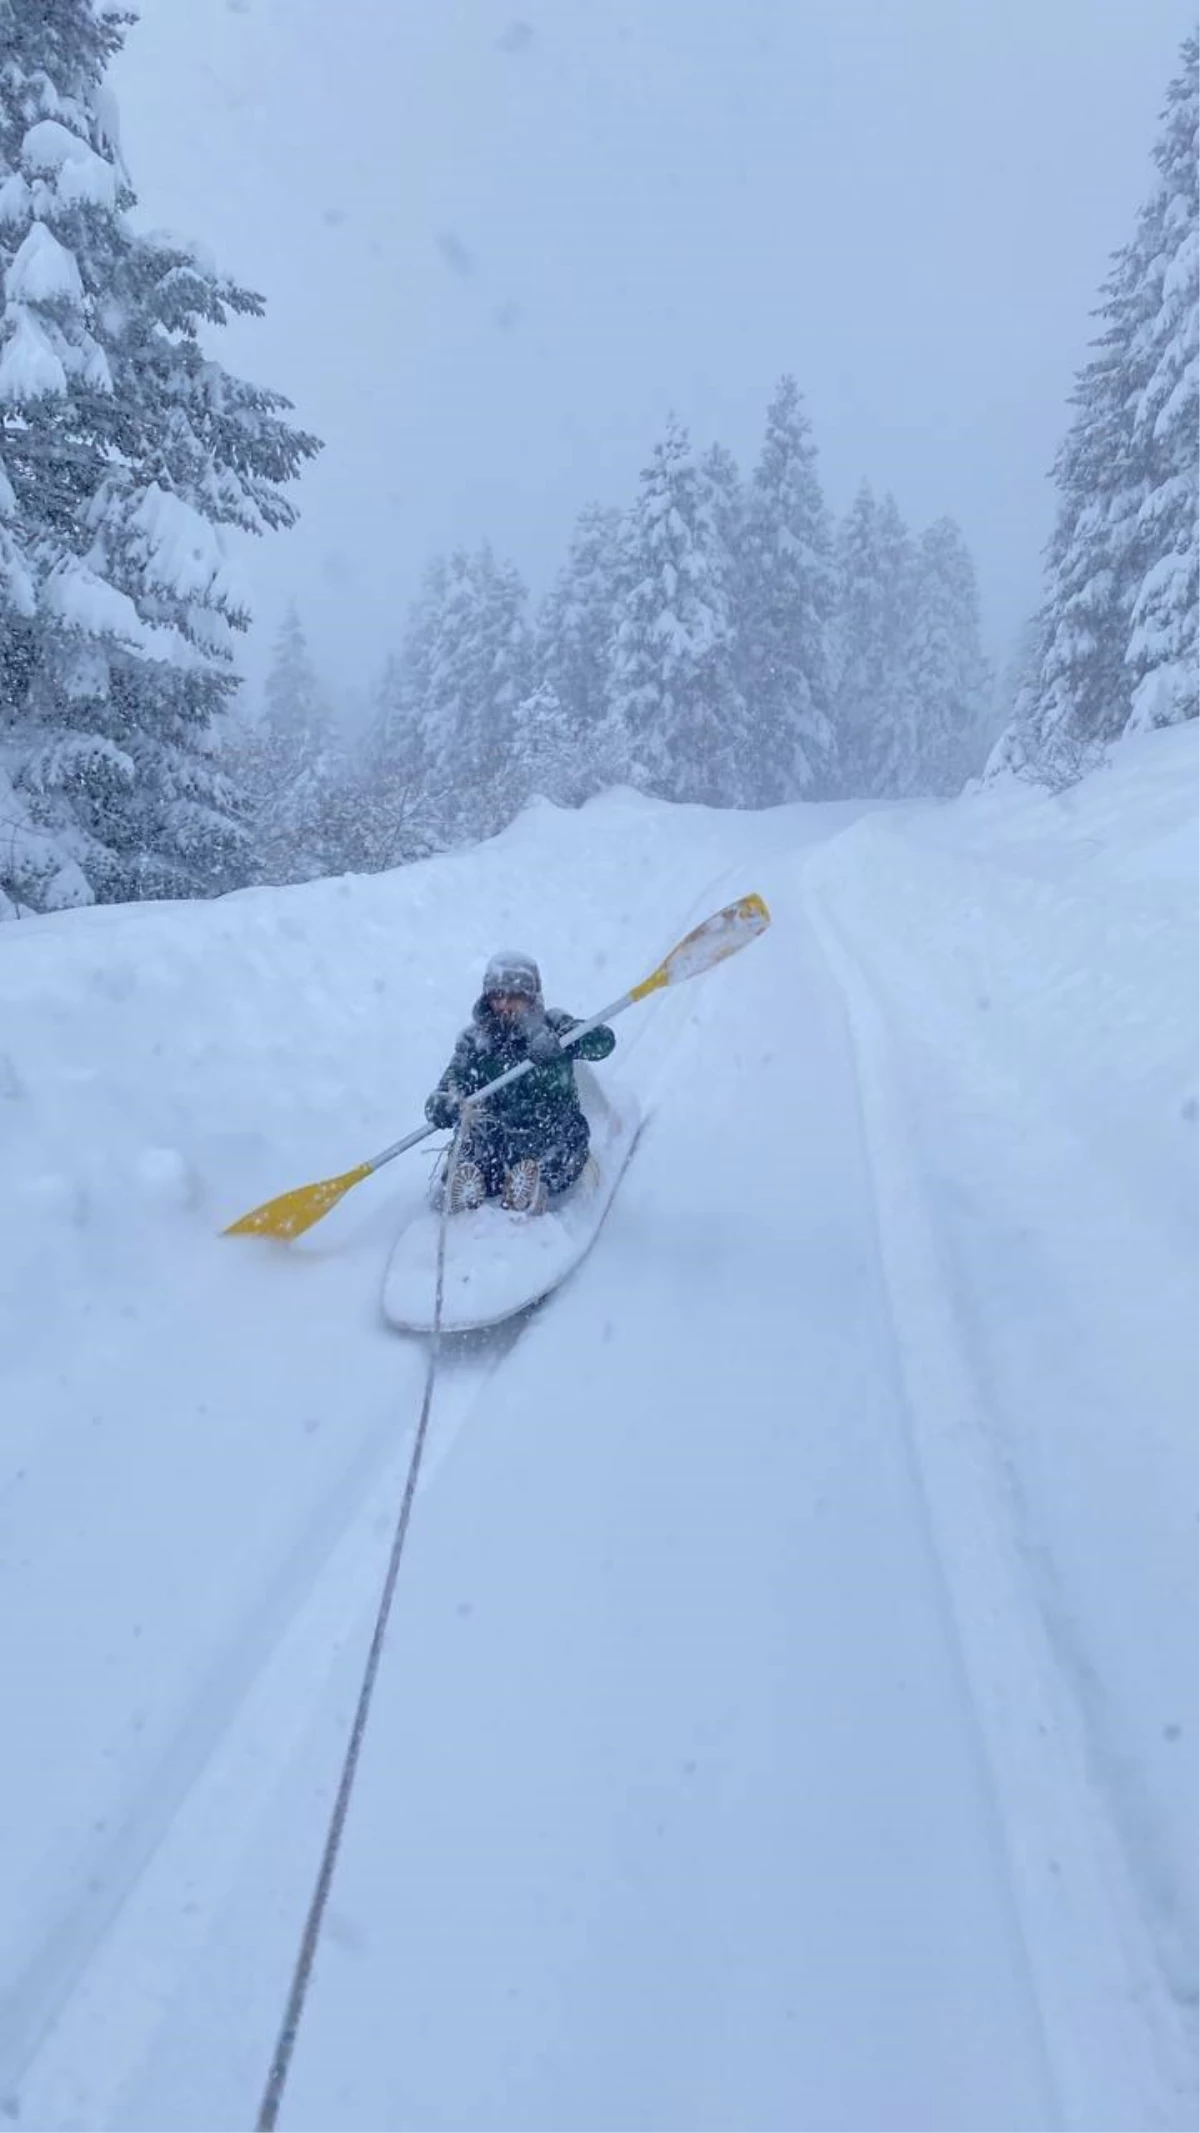 Kano ile karda "ekstrem" kayak keyfi yaptı